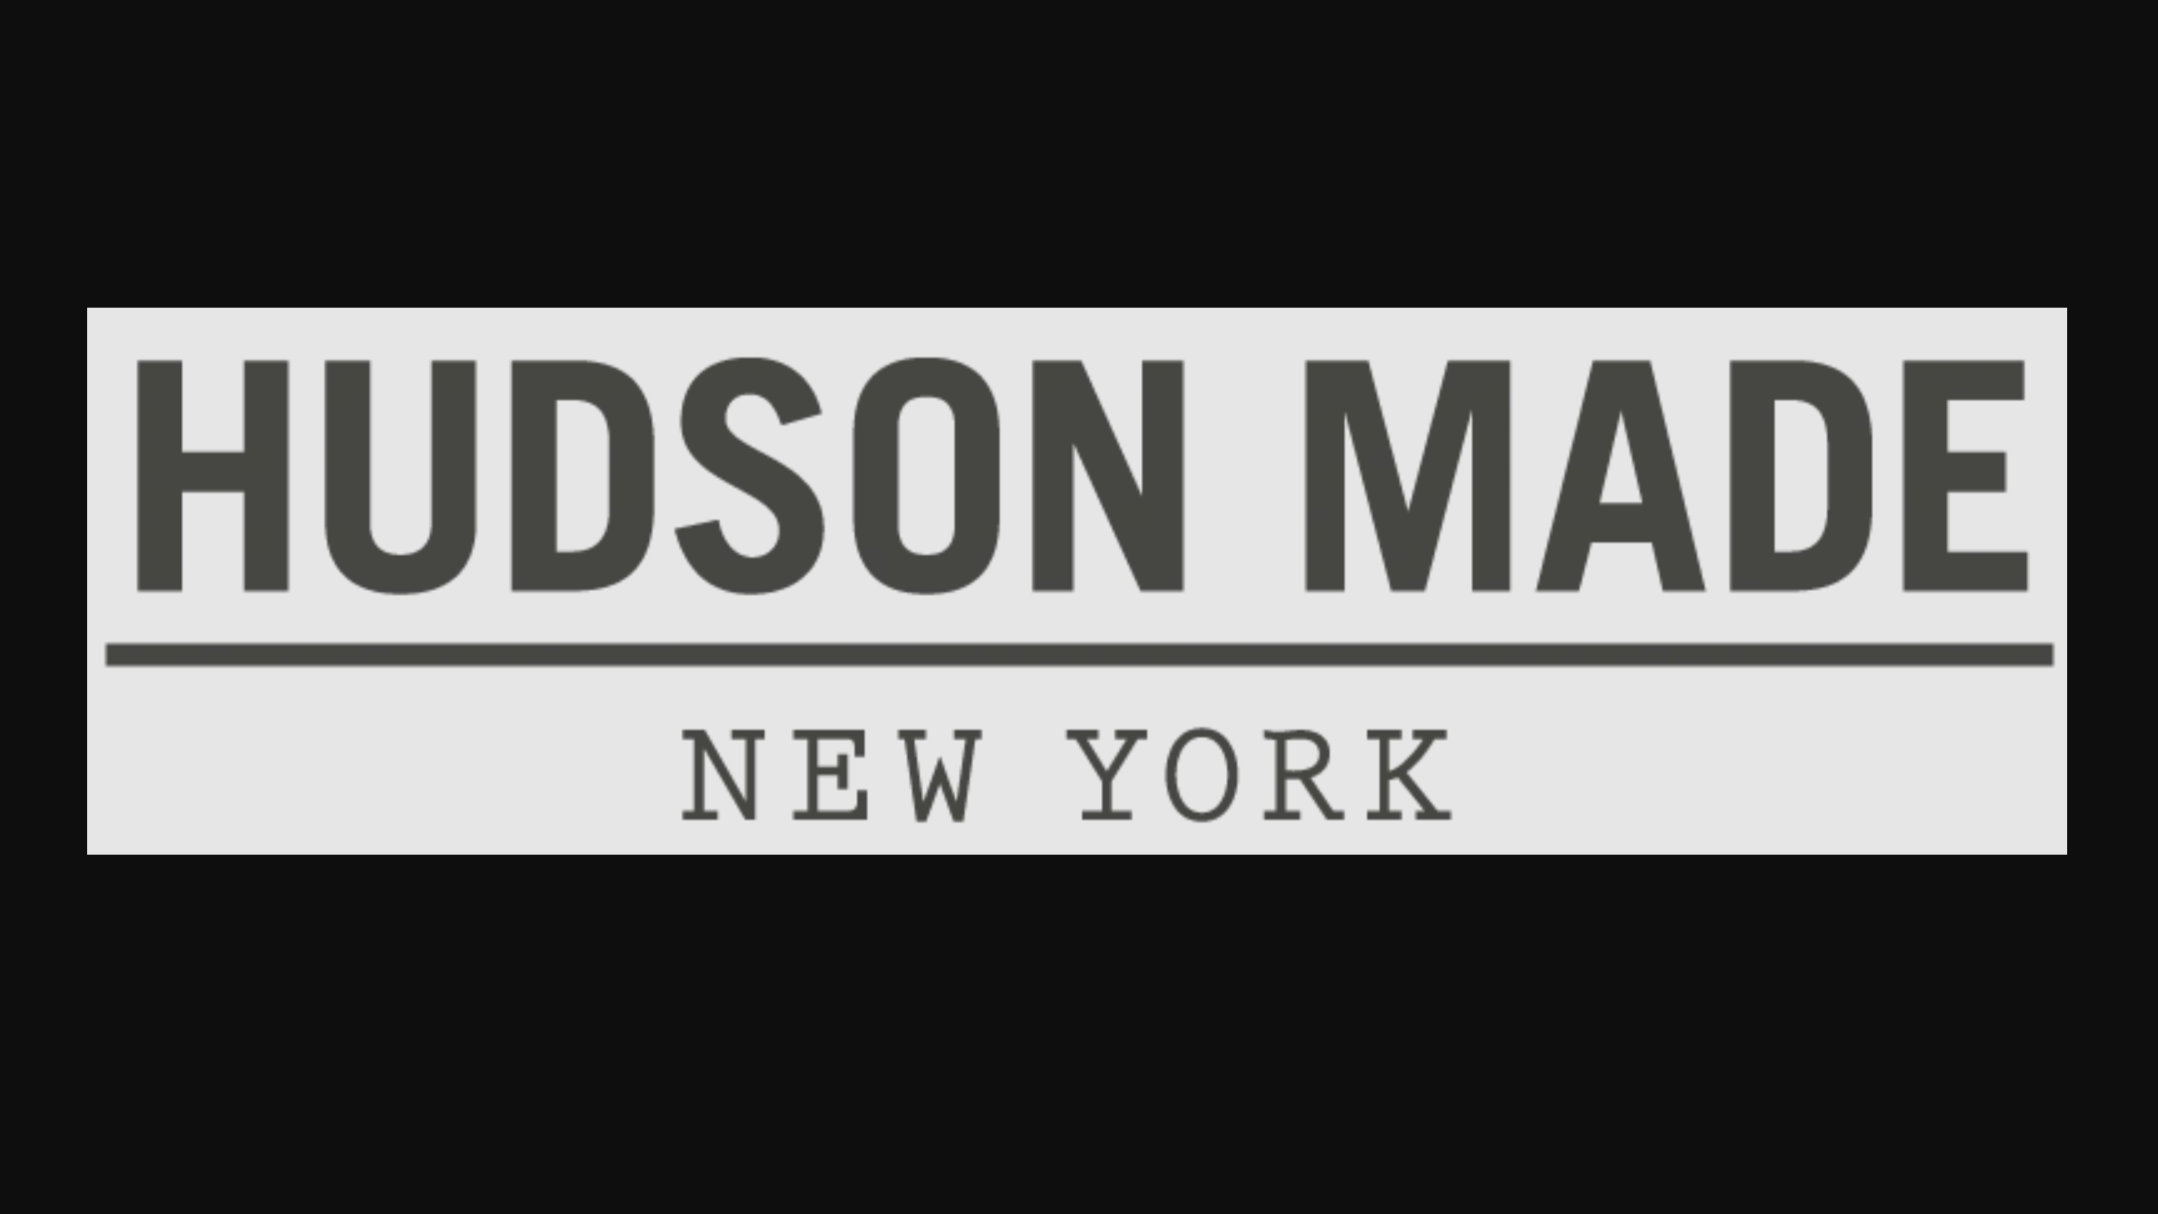 Hudson Made New York